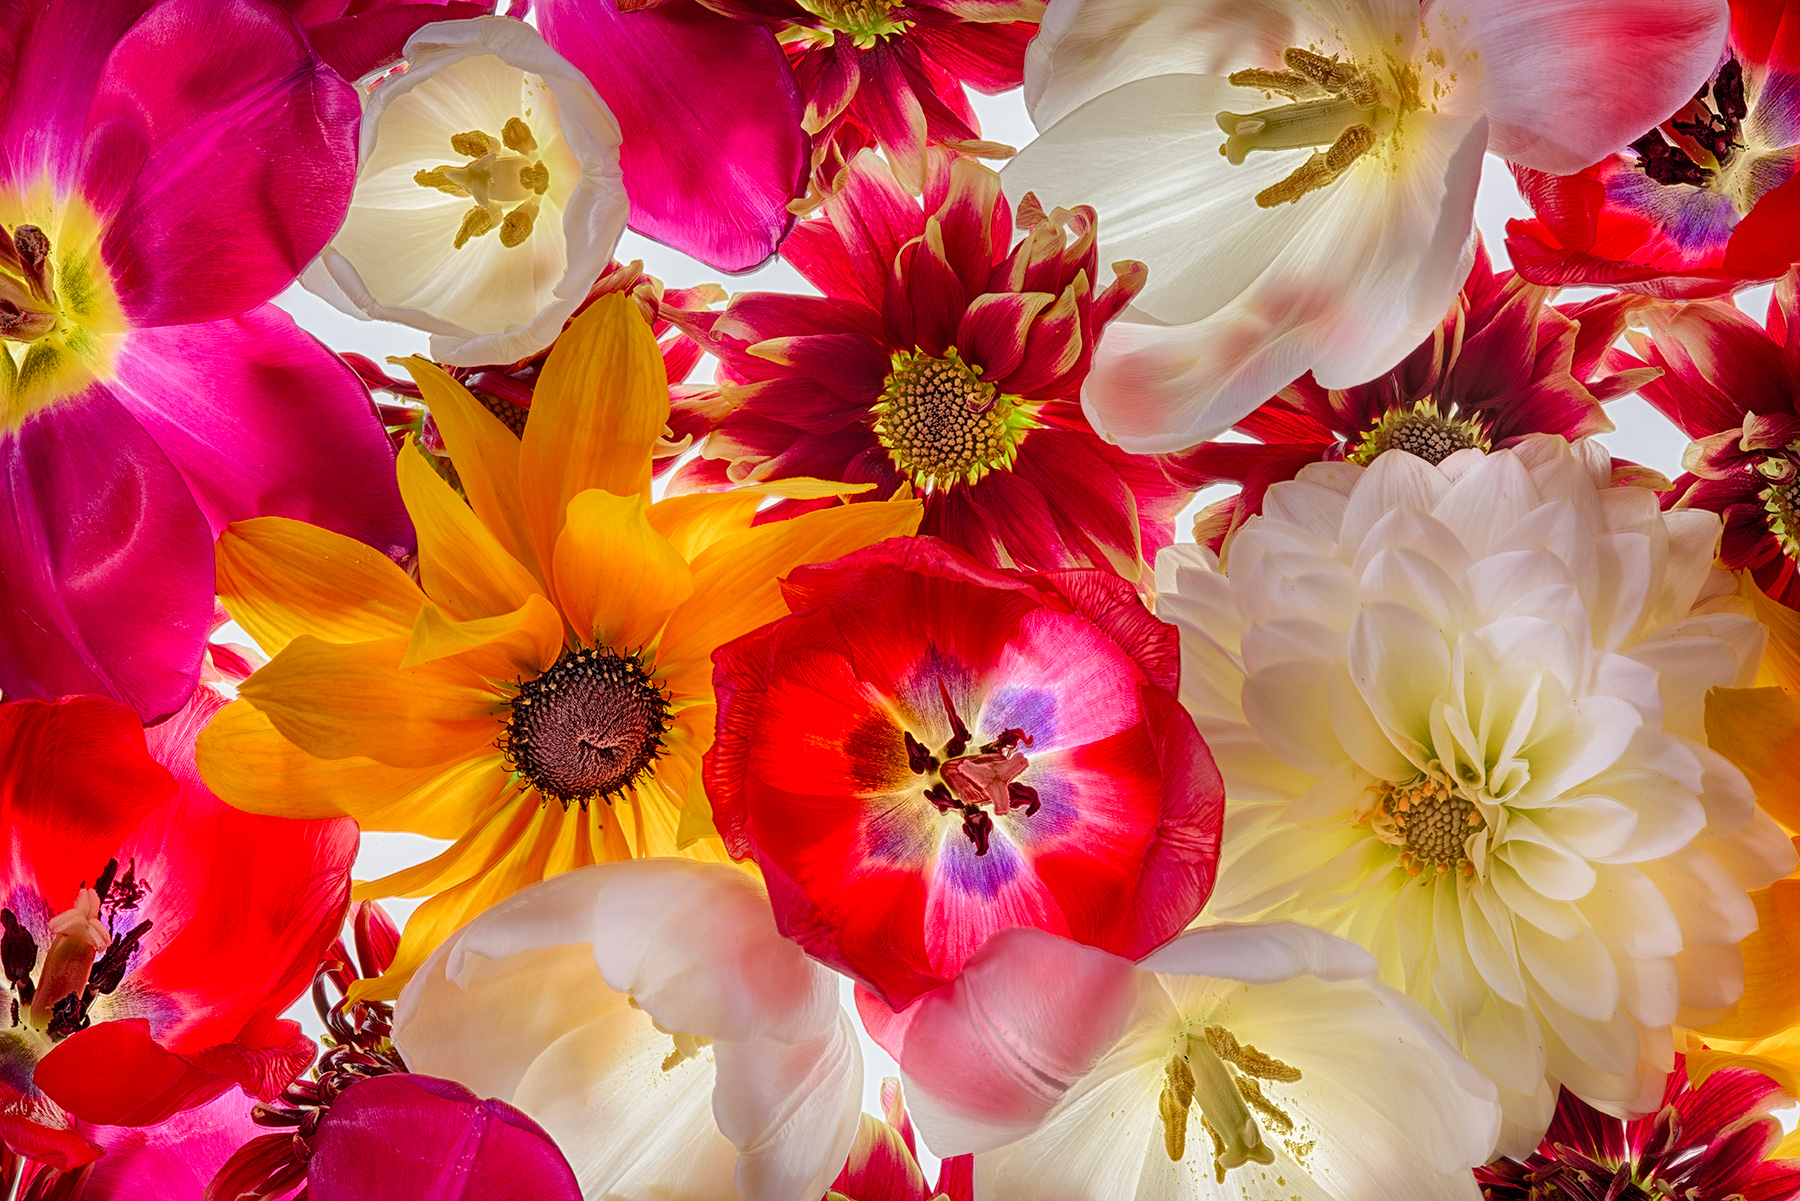 Floral Conference © Harold Davis